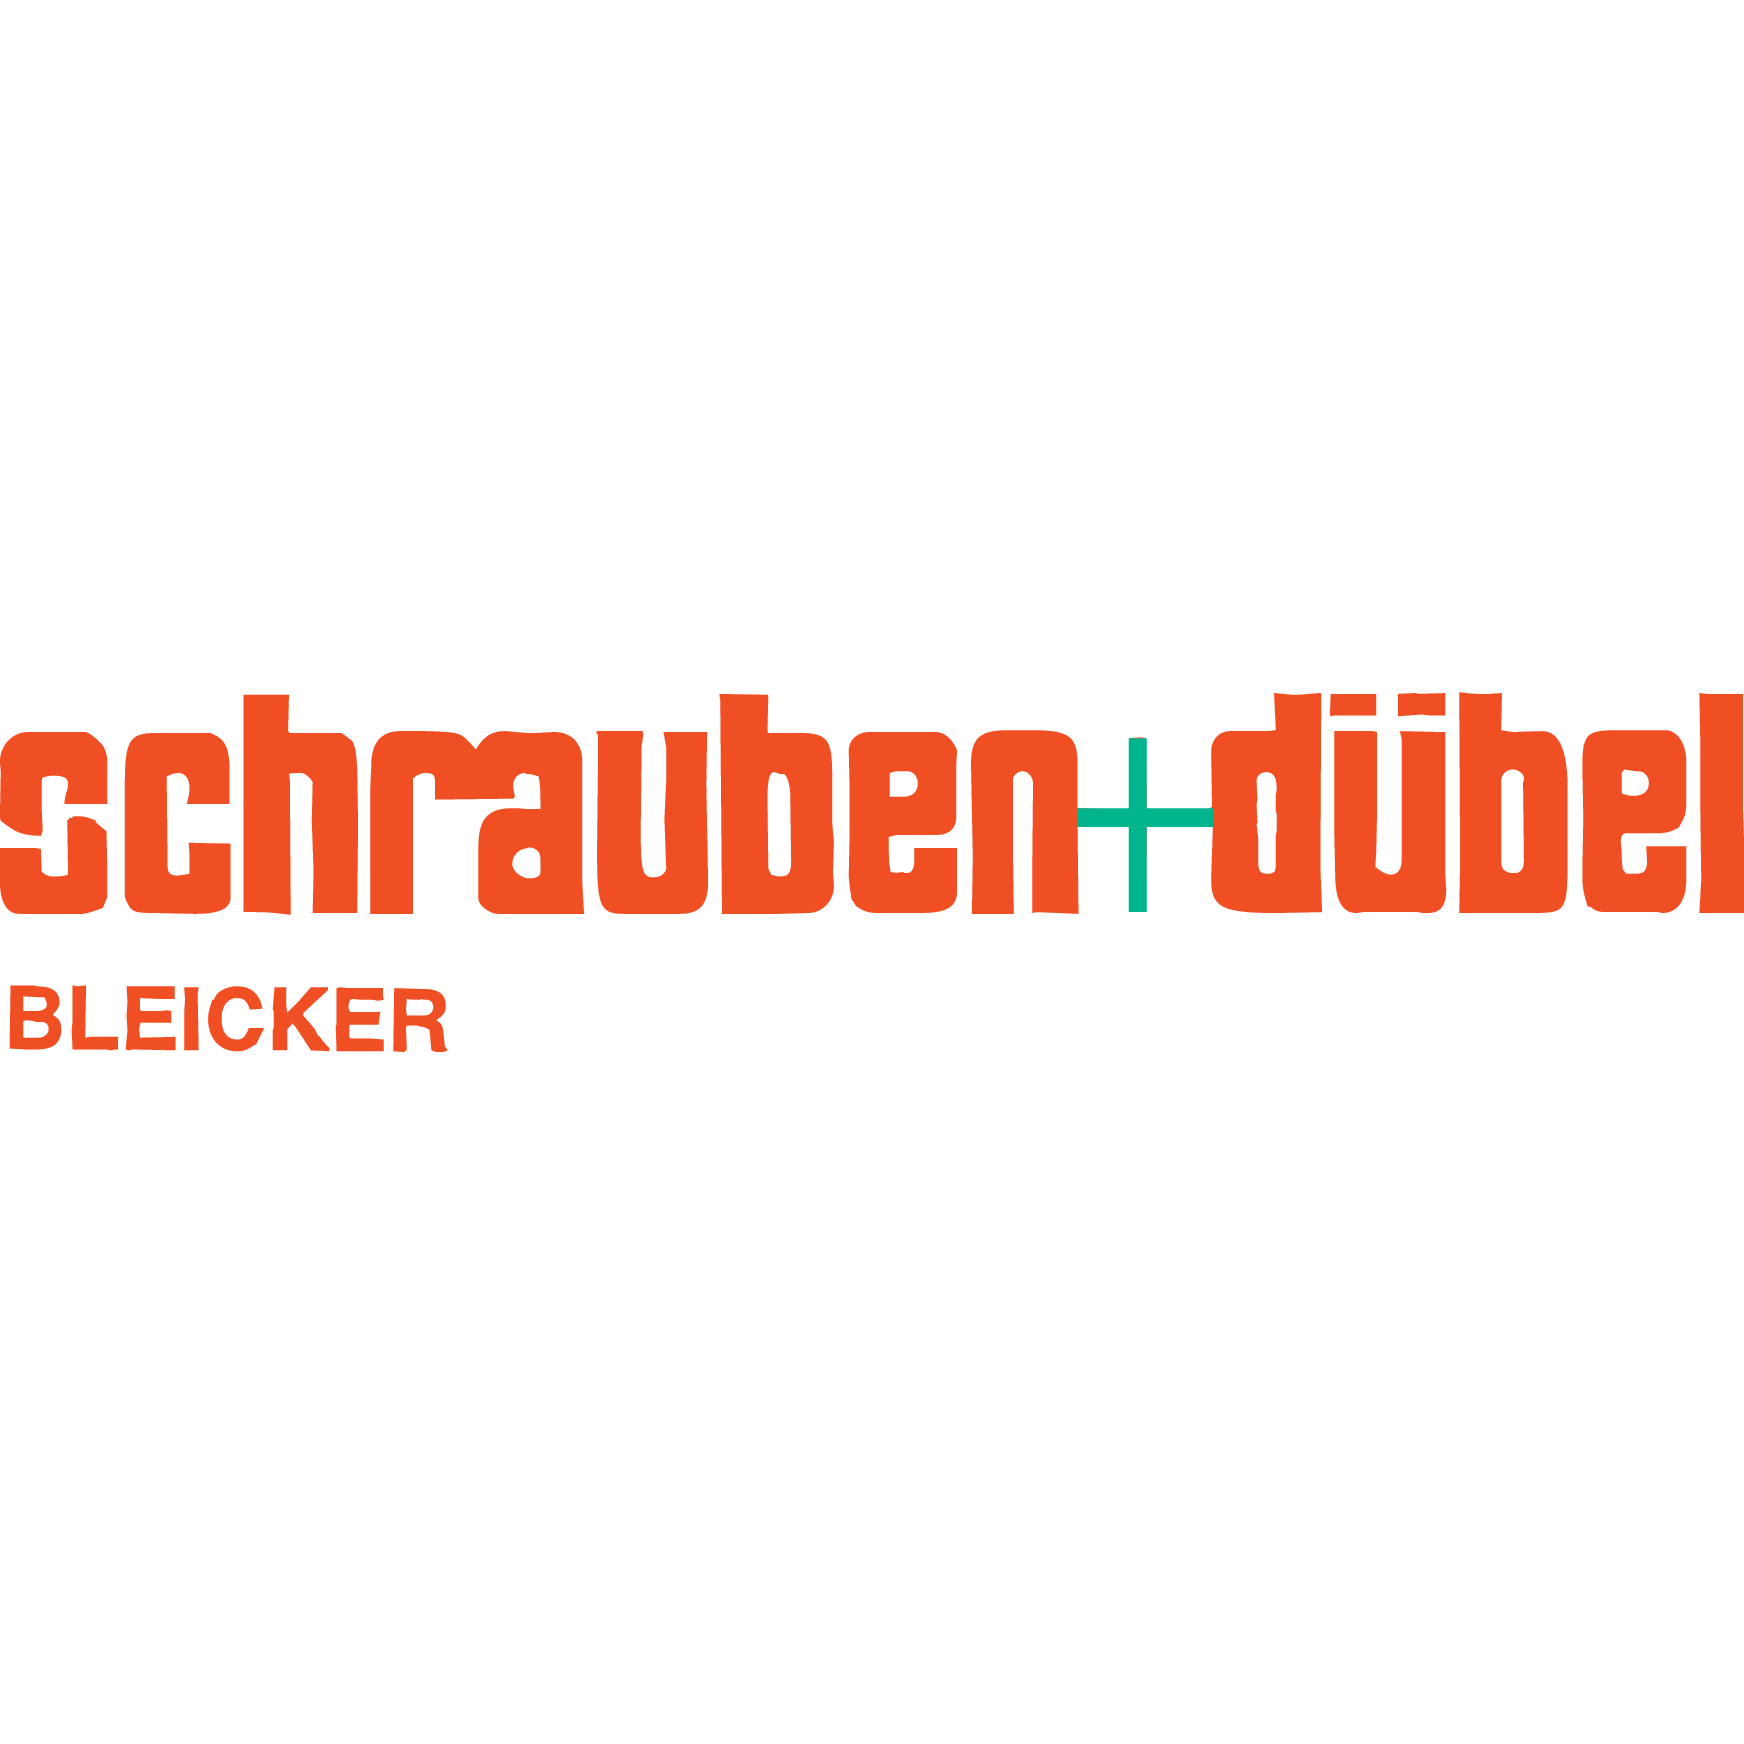 Schrauben + Dübel Handelsgesellschaft mbH in Remse - Logo